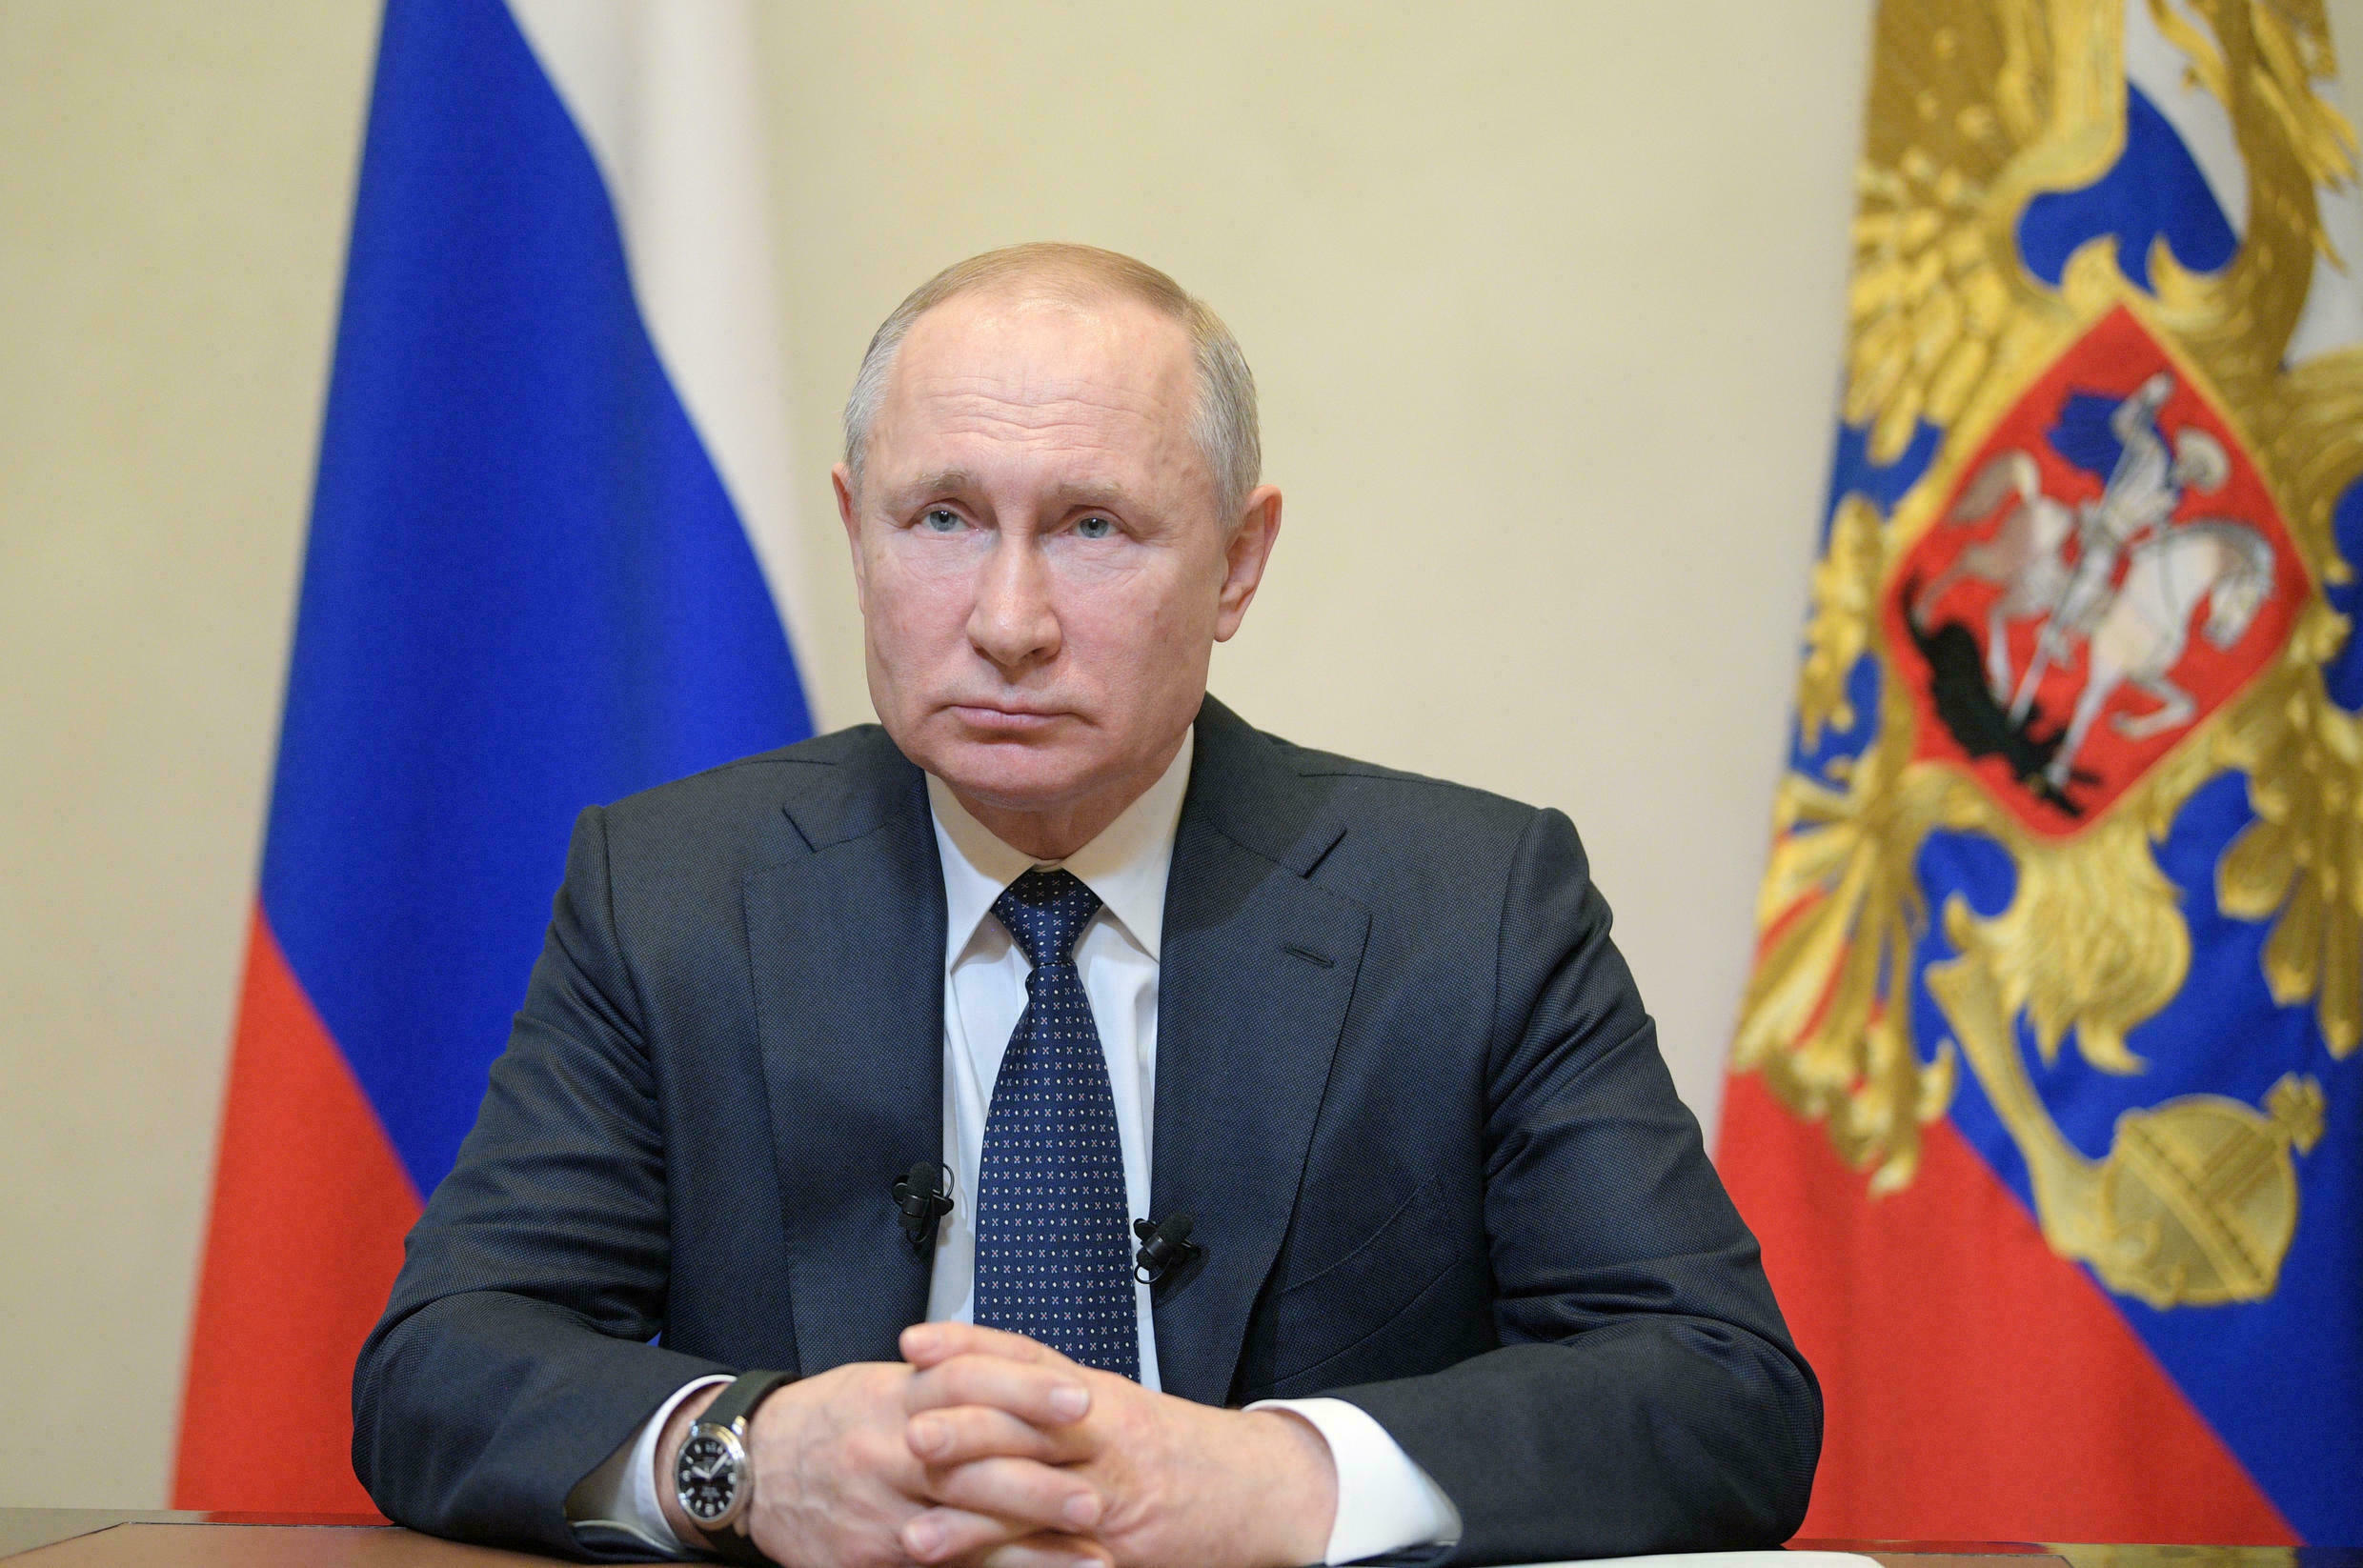 Putin den göçmen krizi açıklaması